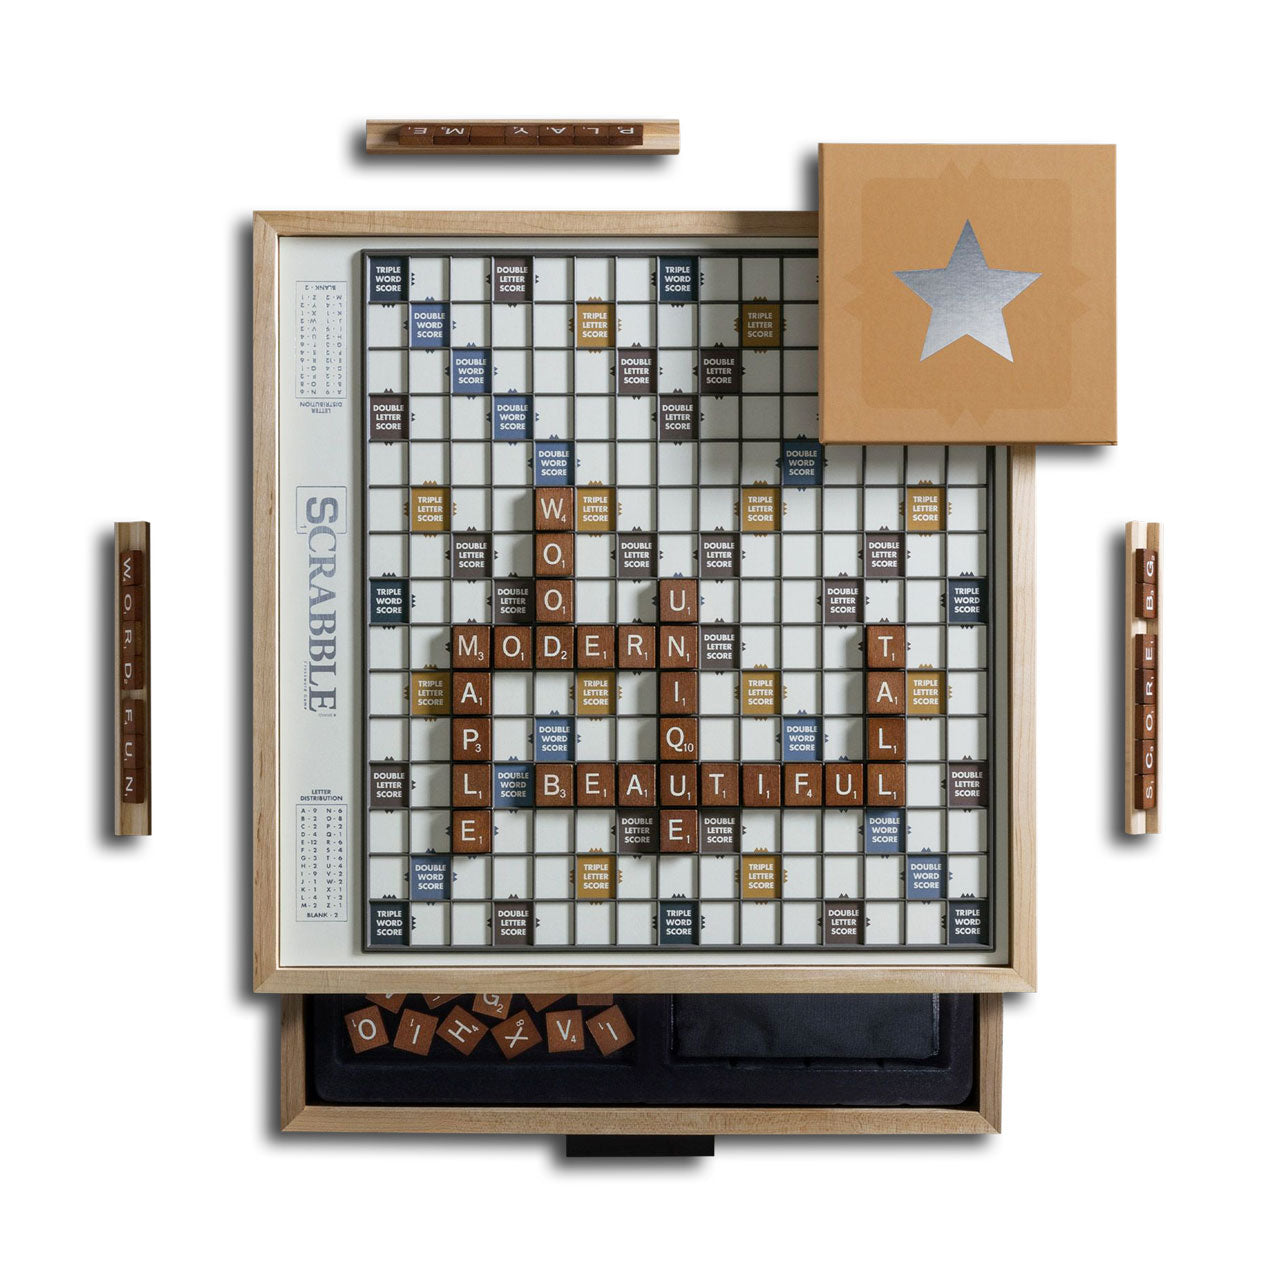 Scrabble Classic Version Luxury Edition Board Game